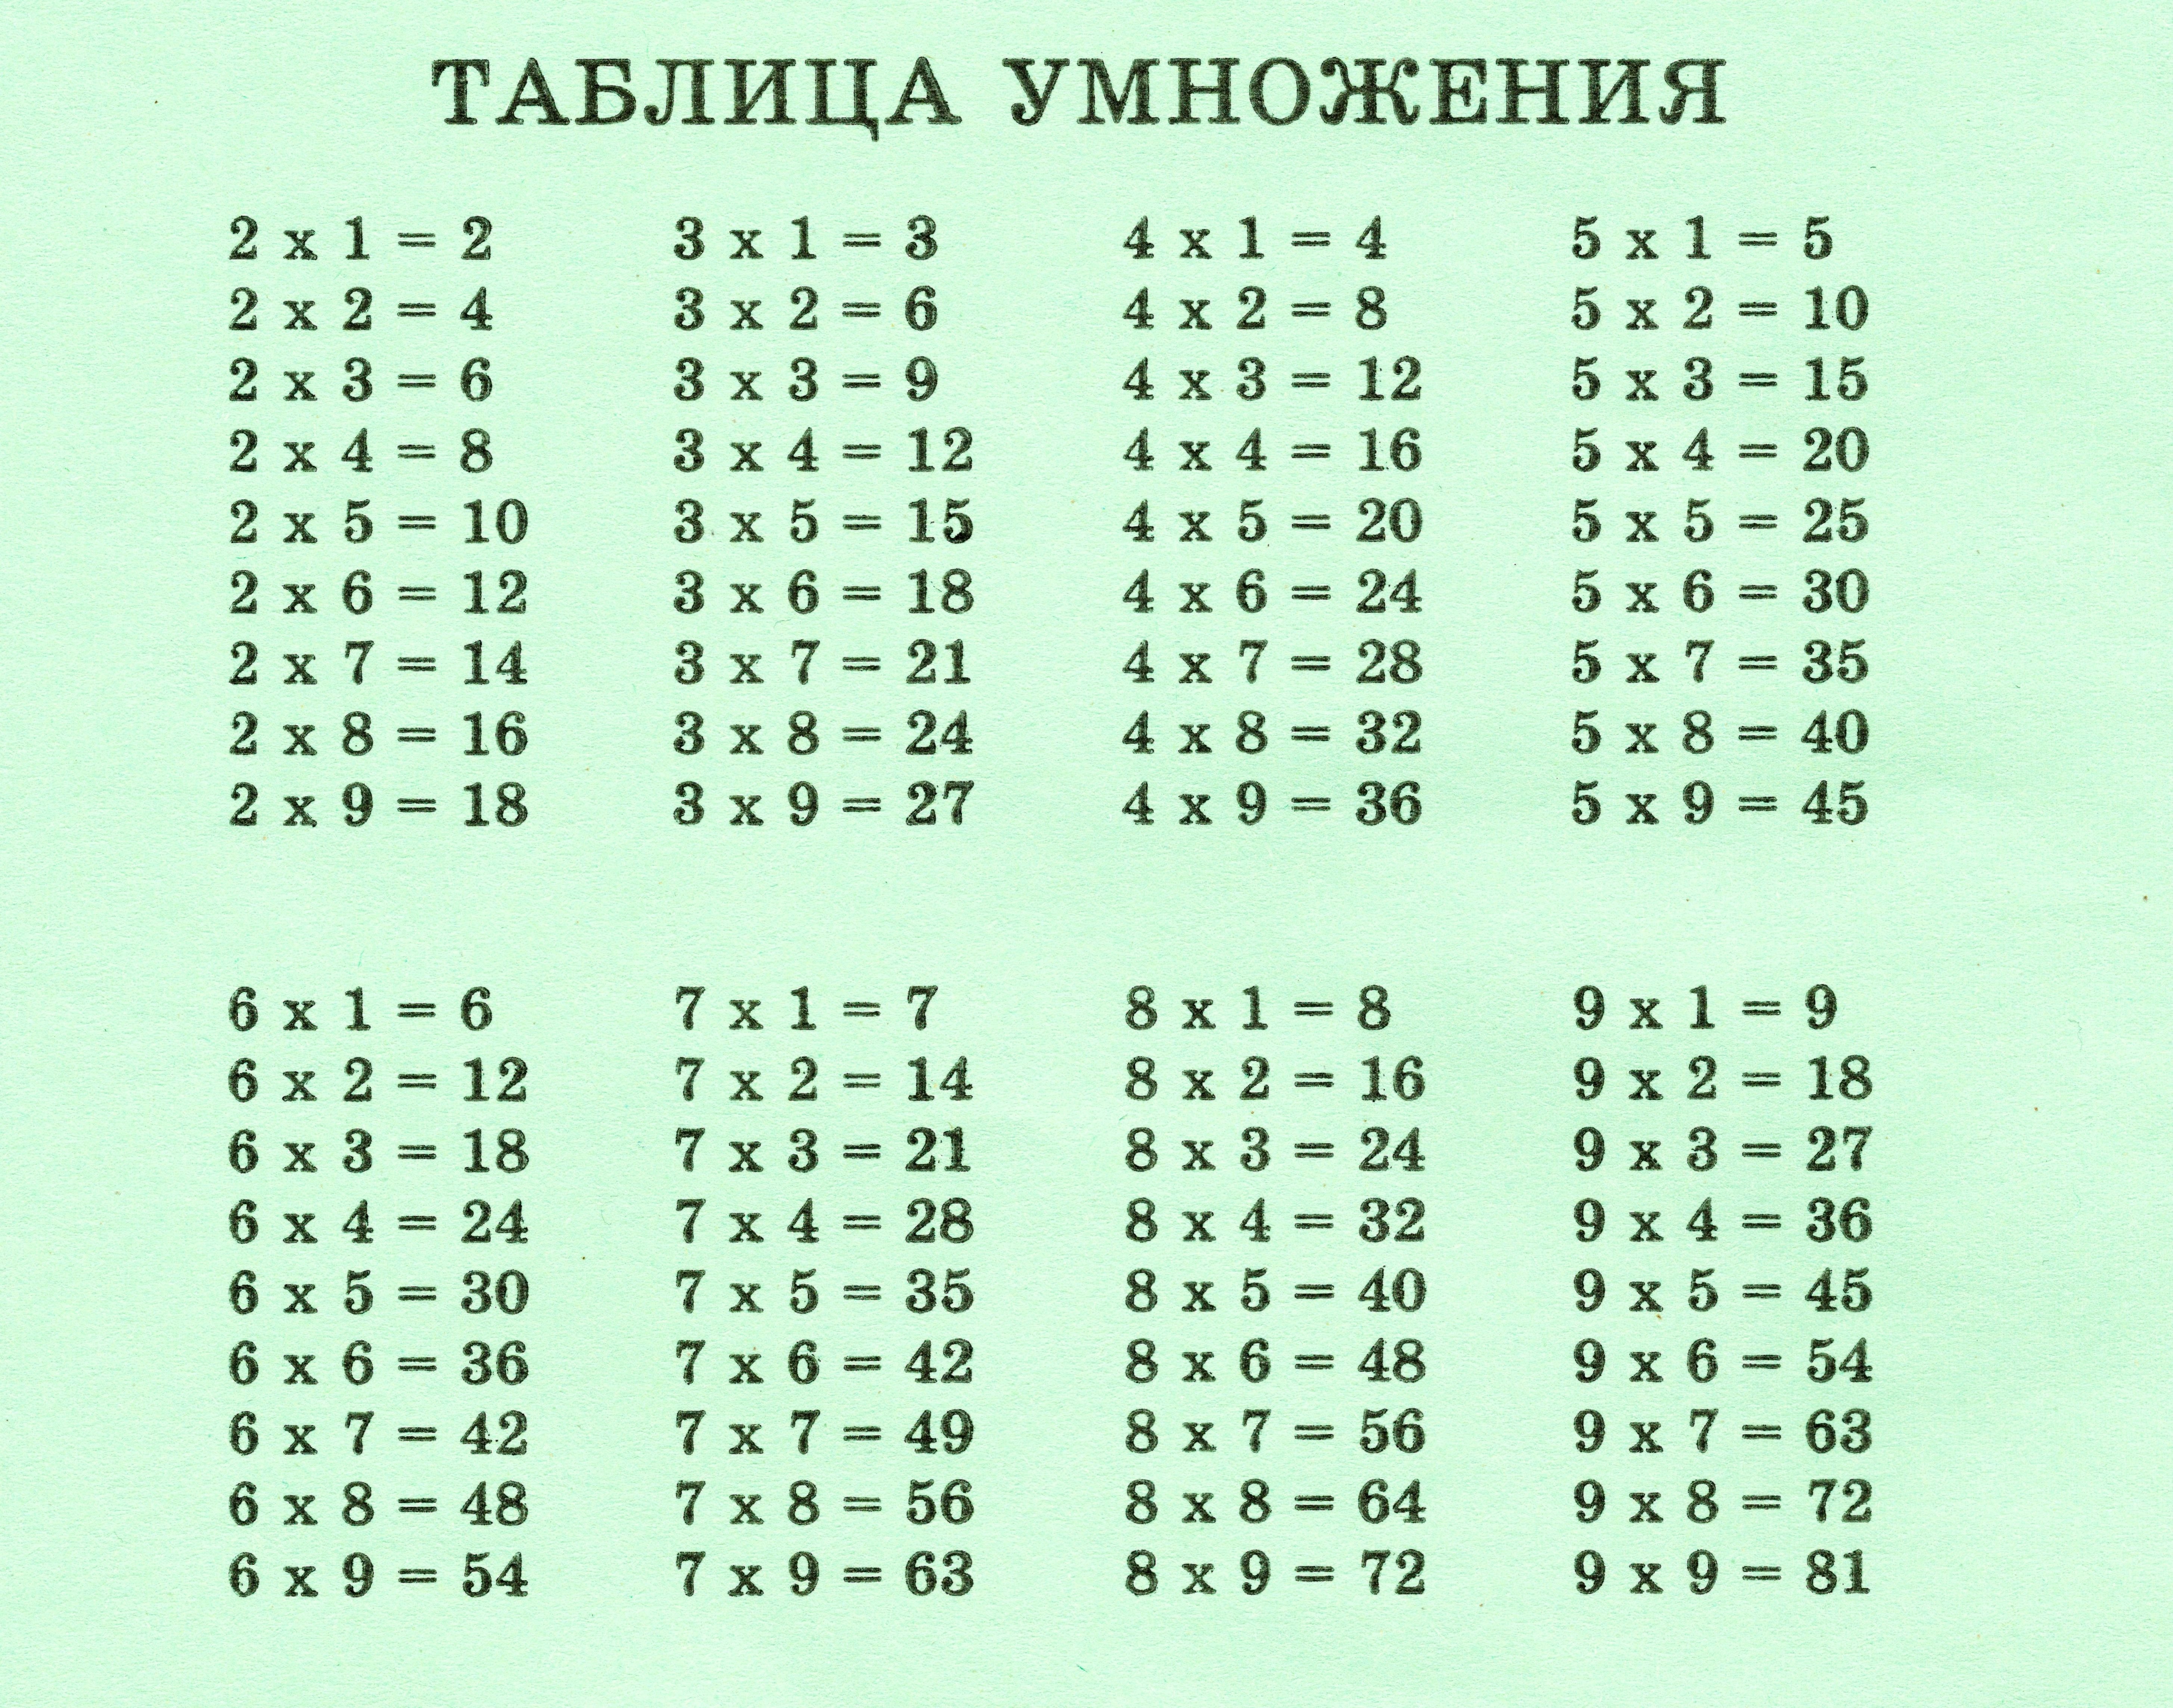 Таблица умножения на 2 3 4. Таблица умножения на 1 2 3 4 5. Таблица умножения до 1 до 6. Таблица умножения таблица умножения таблица умножения.